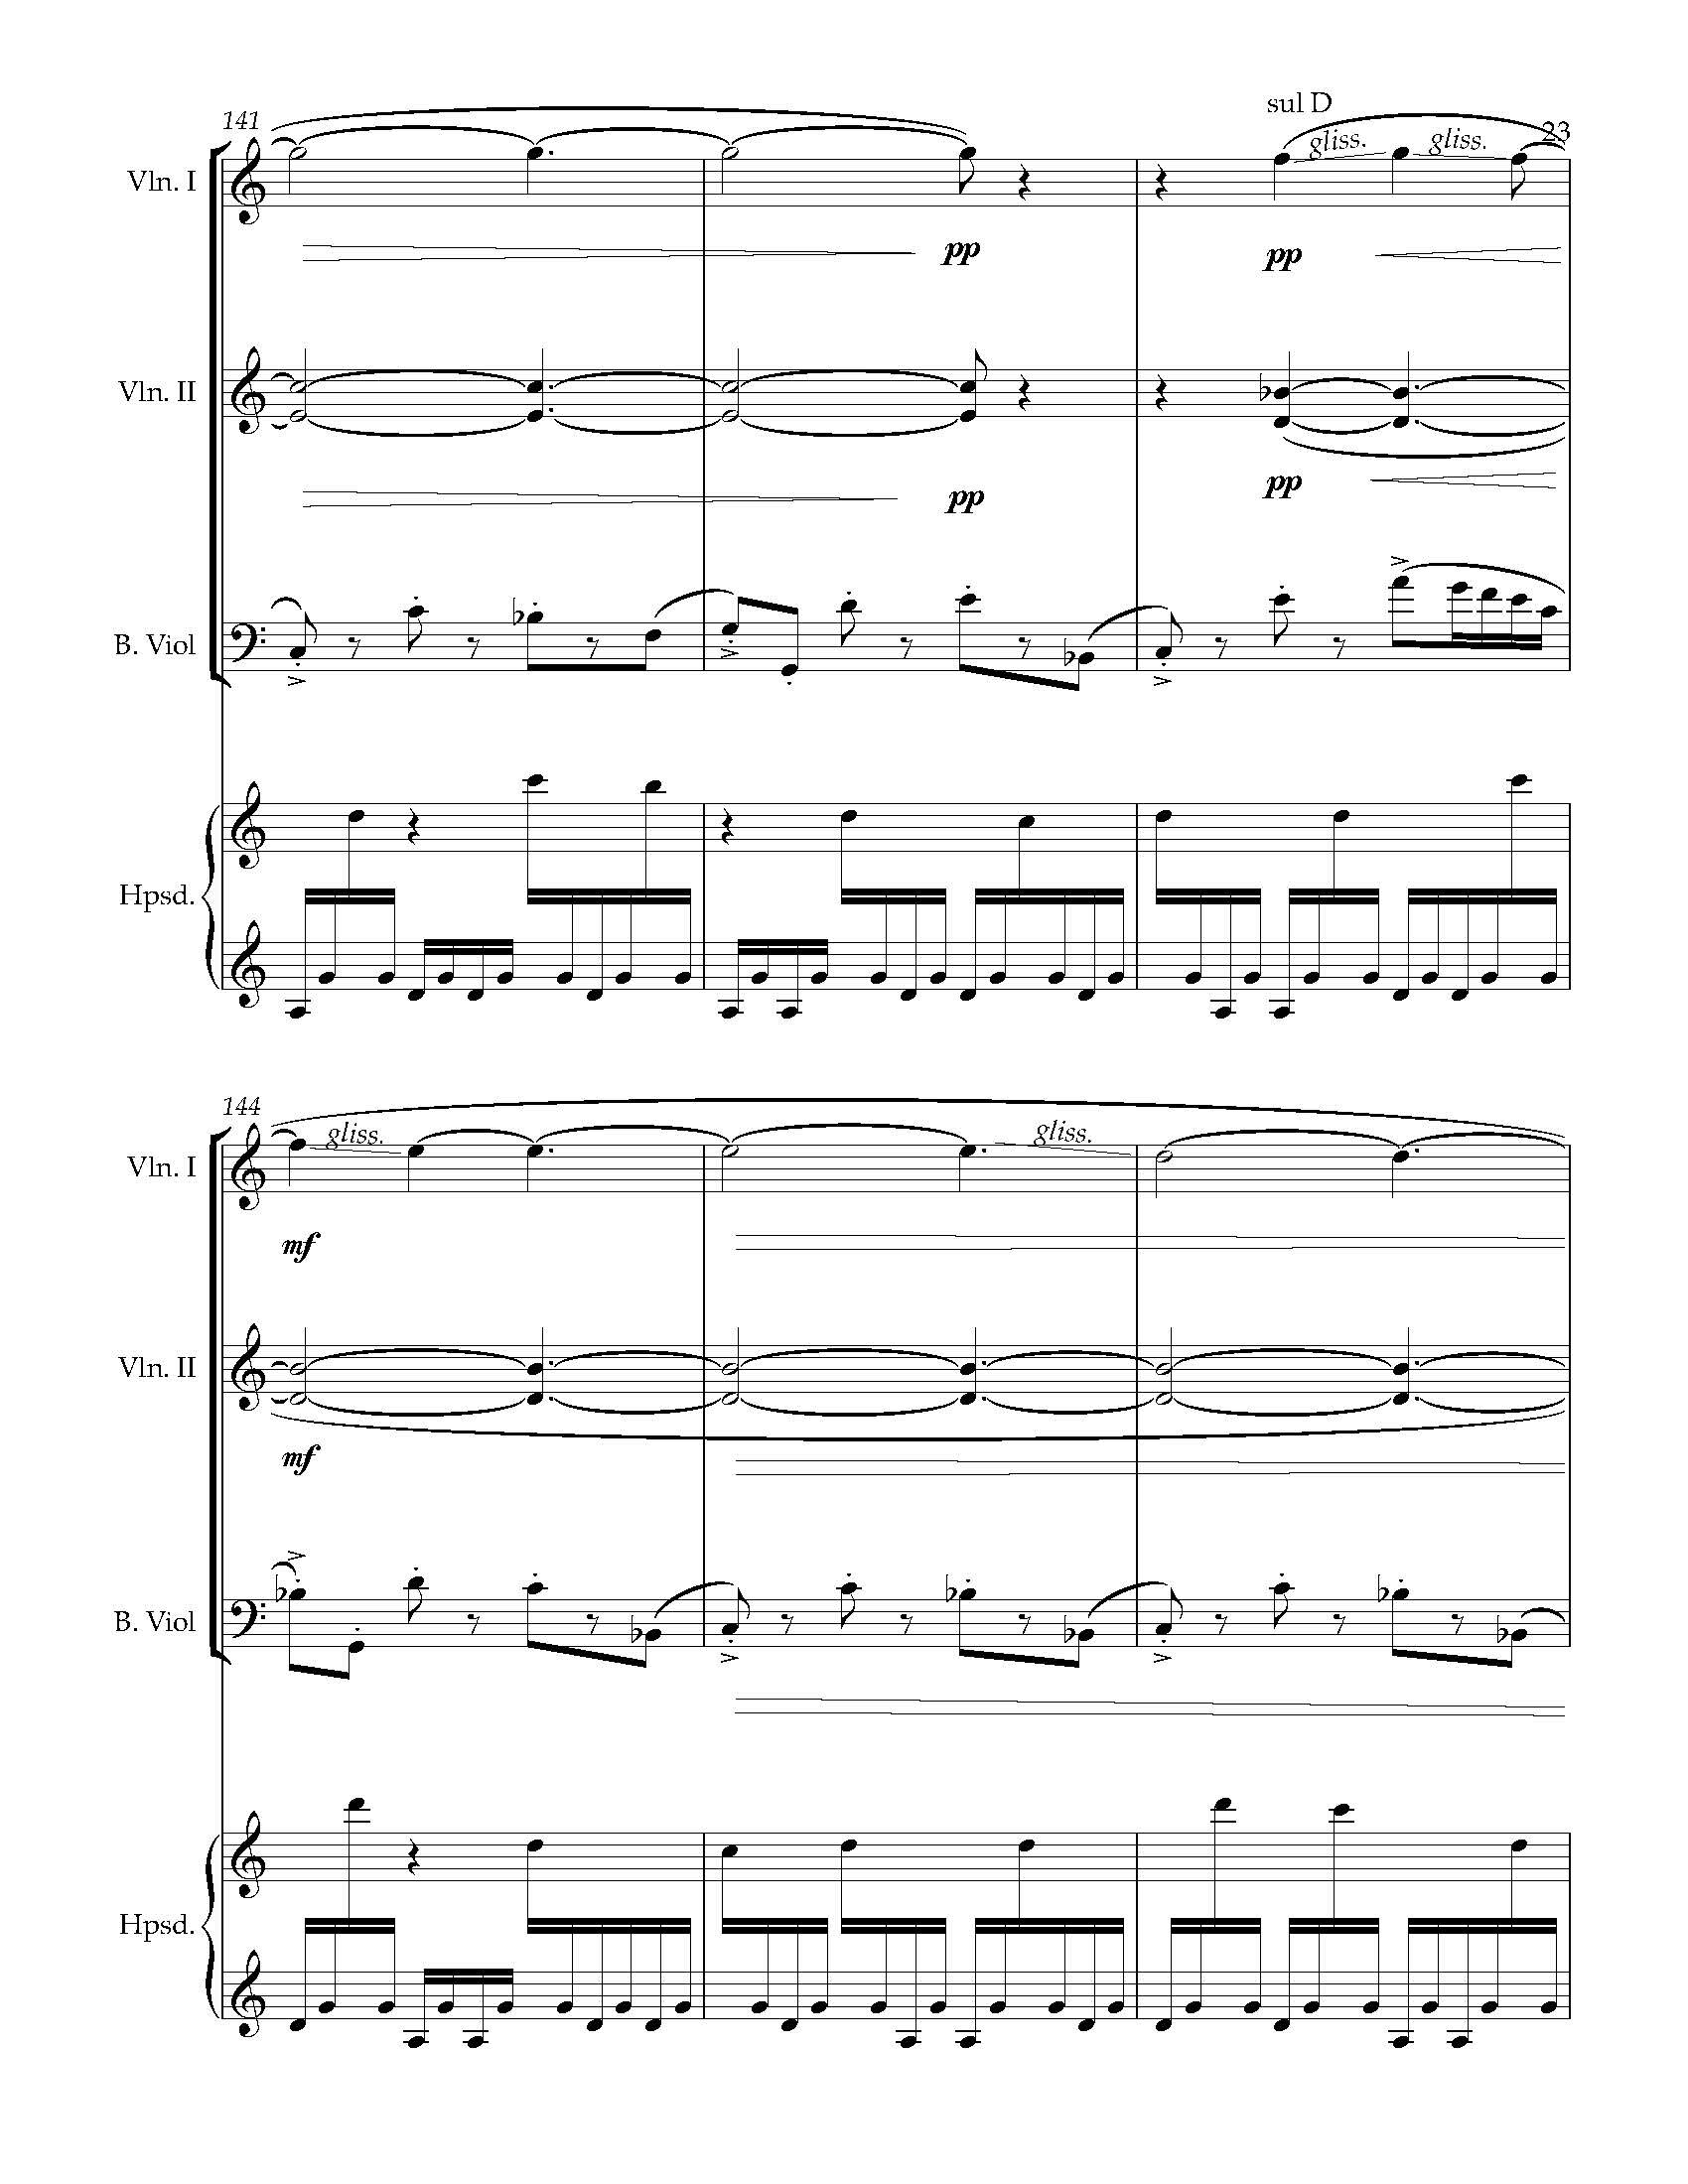 Sonata Sonare - Complete Score_Page_29.jpg